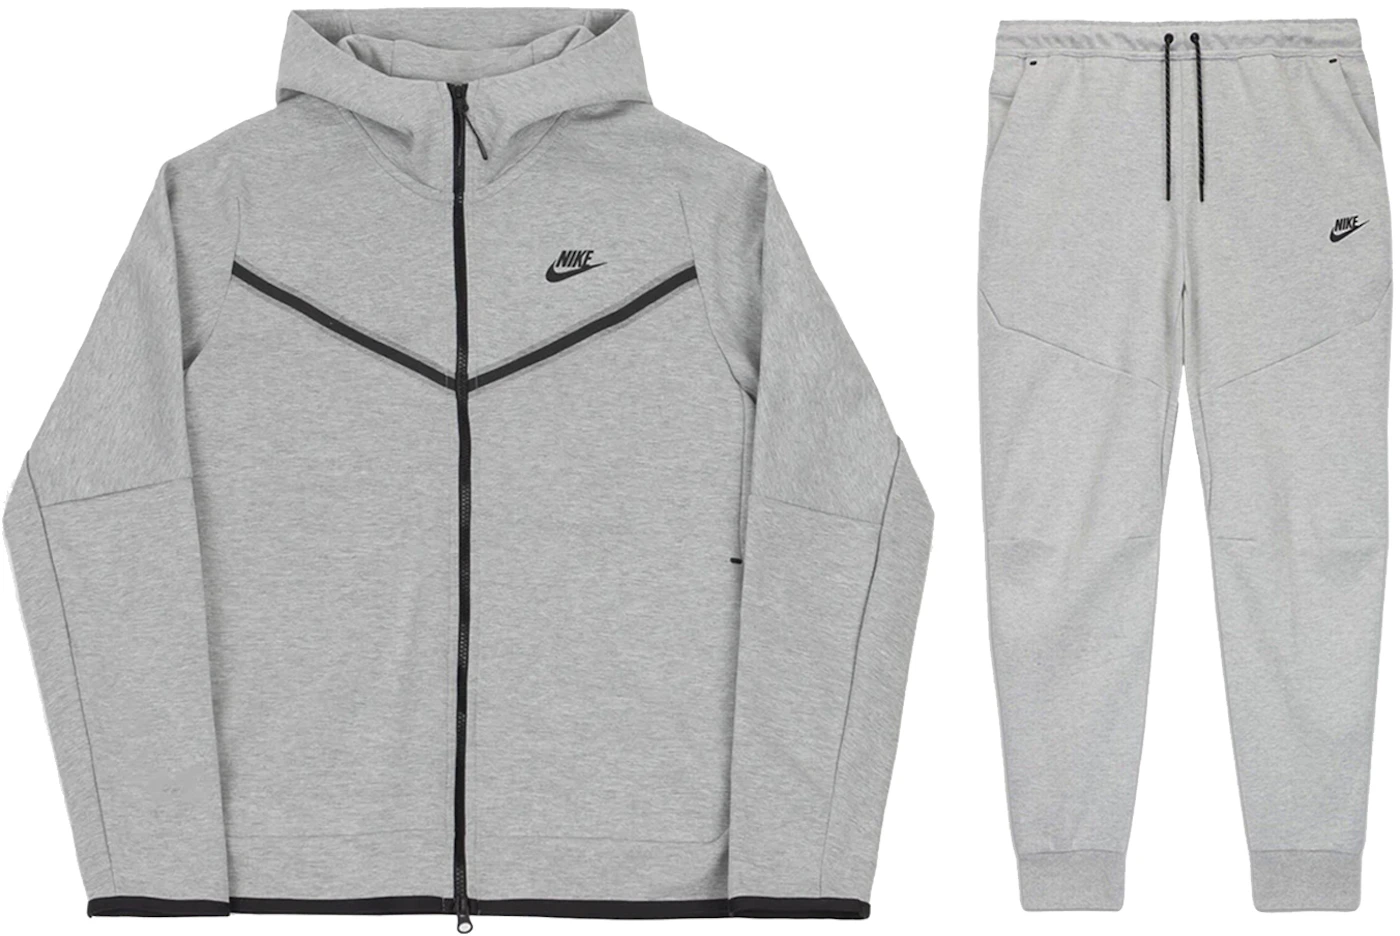 Nike Sportswear Fleece Full Zip Joggers Set Grey -